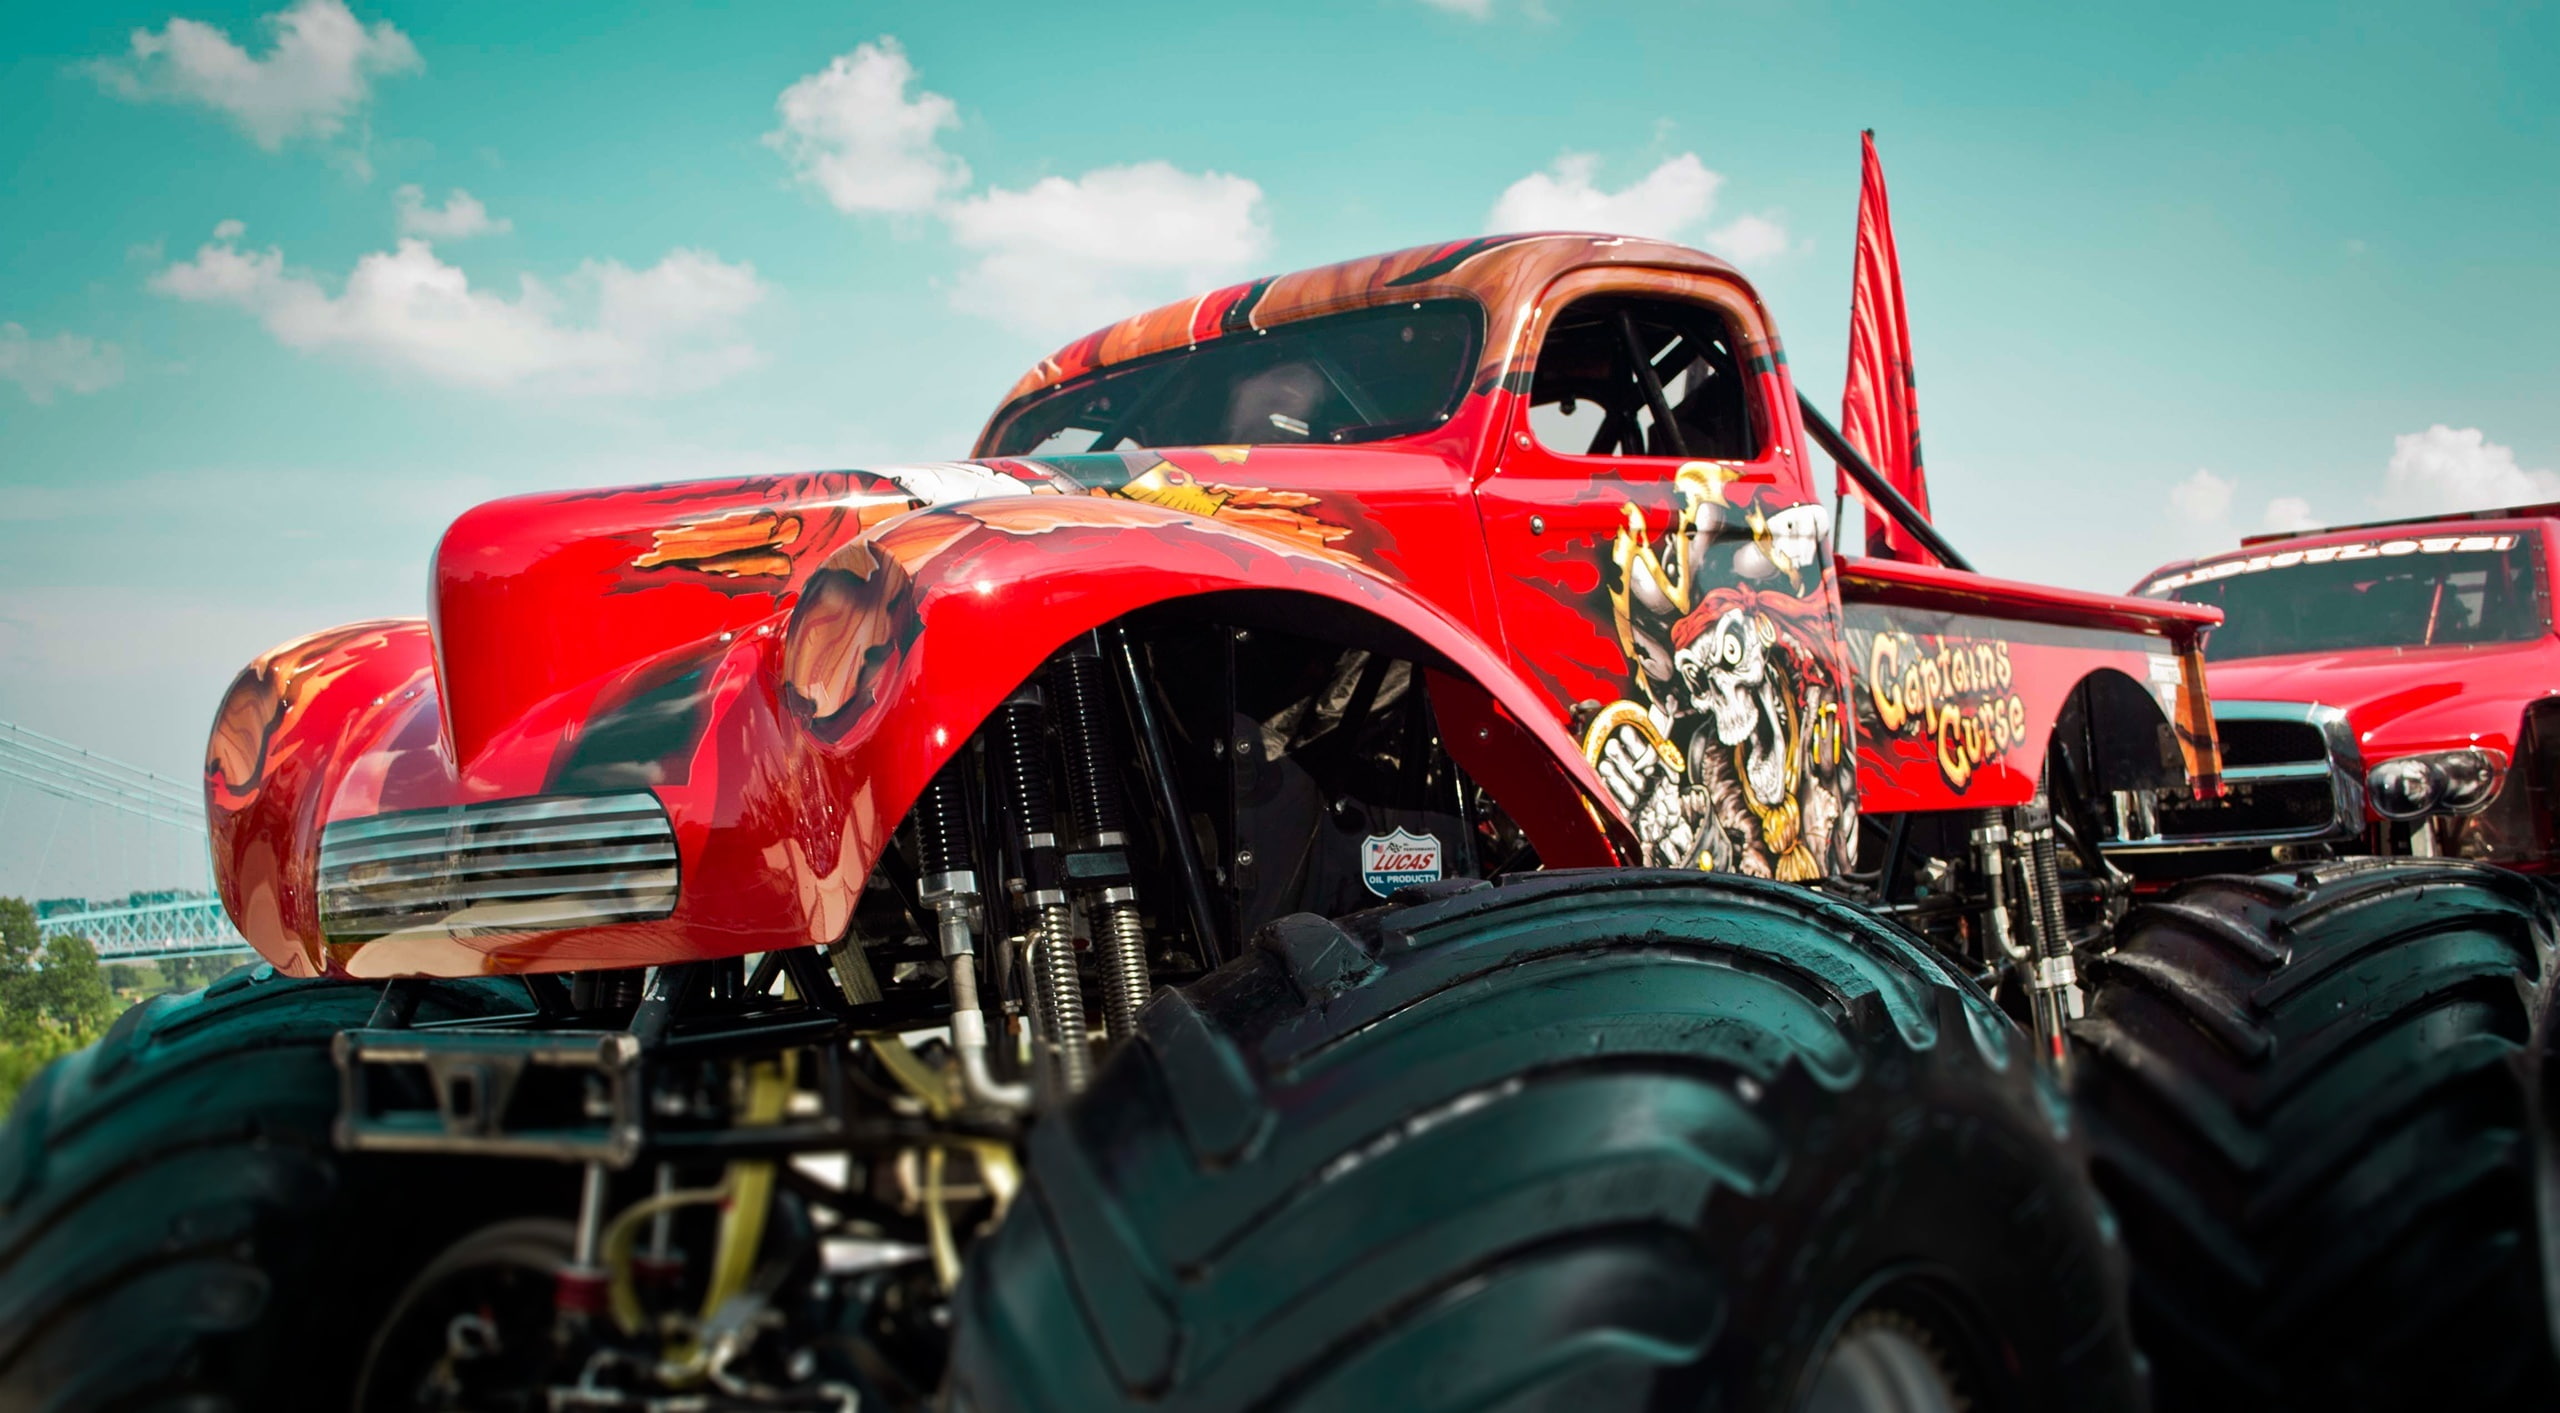 Monster Truck, red monster truck, Motors, Others, transportation